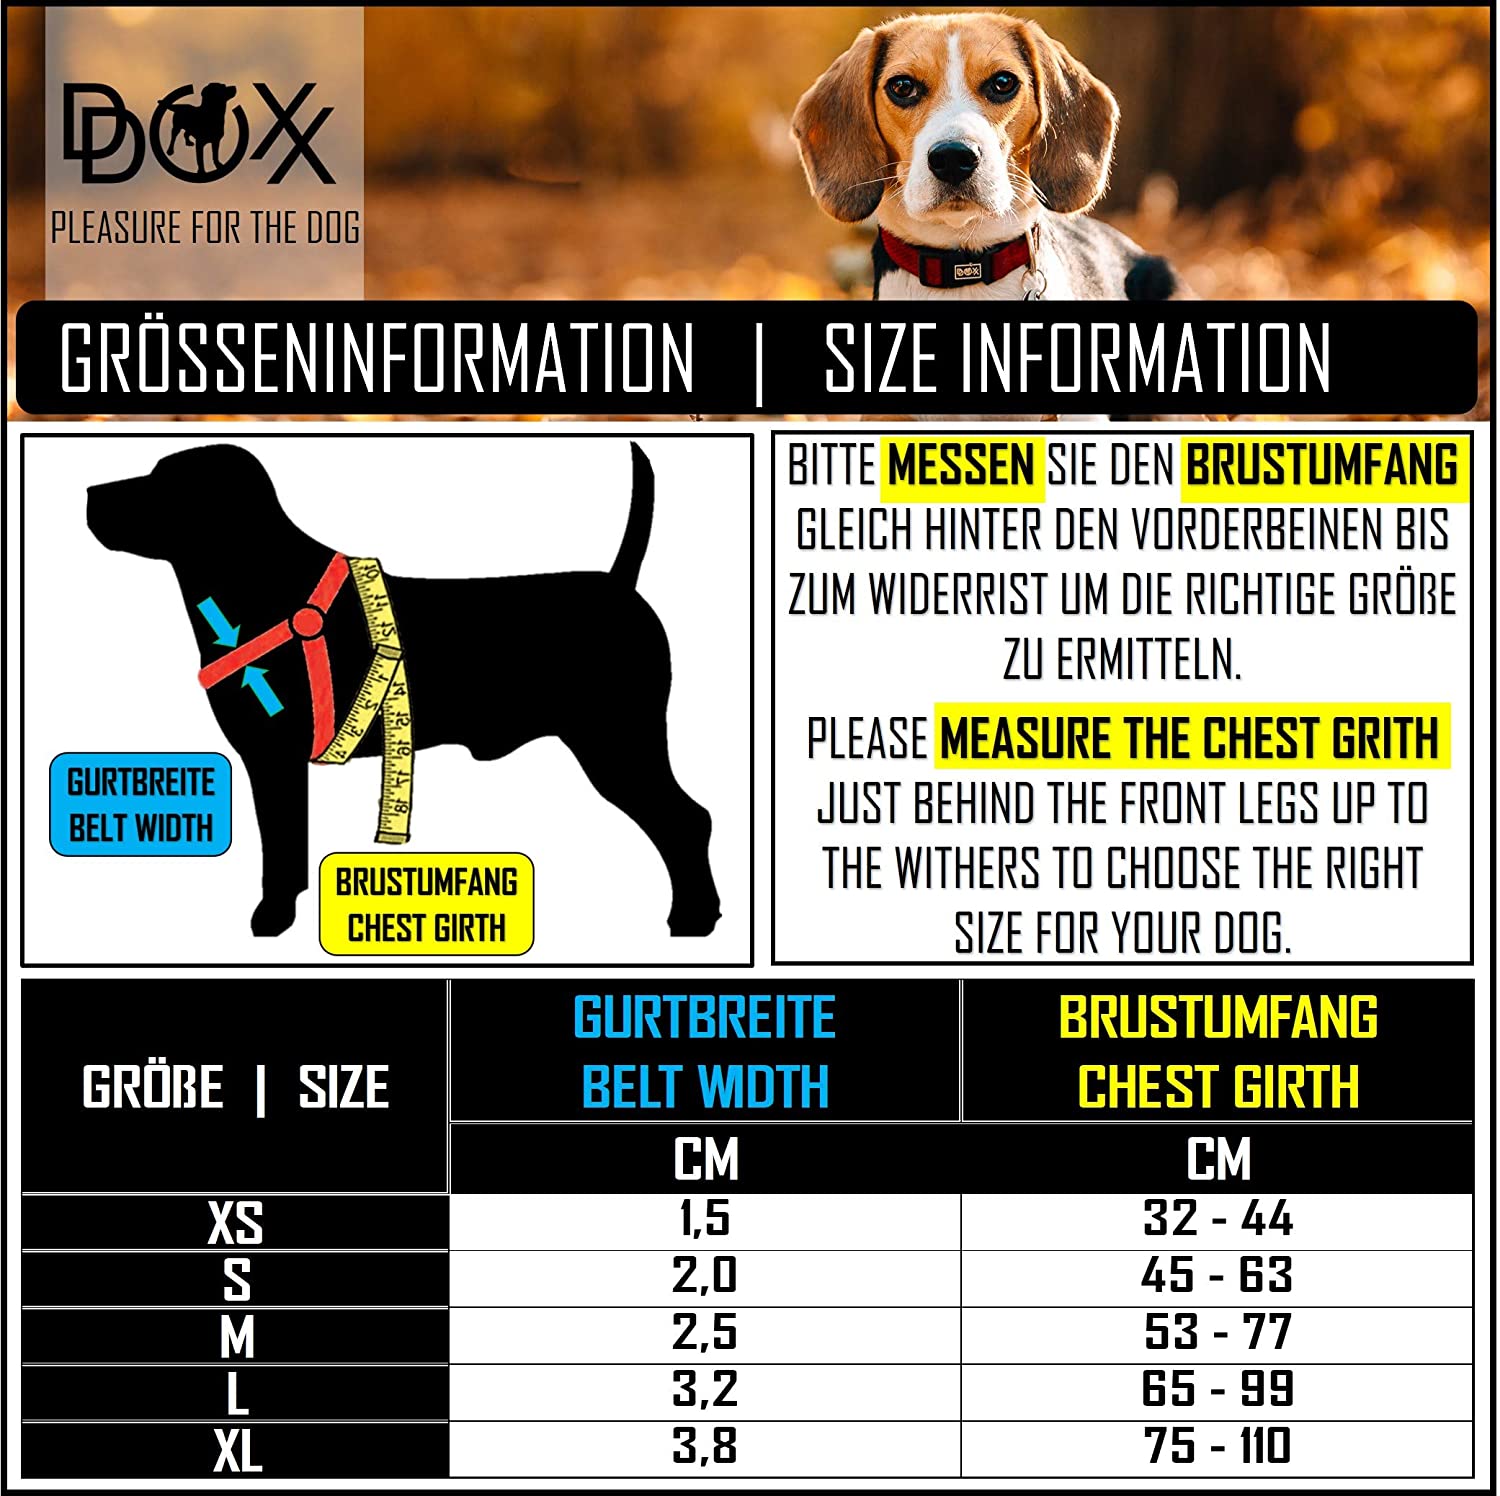  DDOXX Arnés Perro Step-In Air Mesh, Ajustable, Acolchado | Diferentes Colores & Tamaños | para Perros Pequeño, Mediano y Grande | Accesorios Gato Cachorro | Rojo, XS 